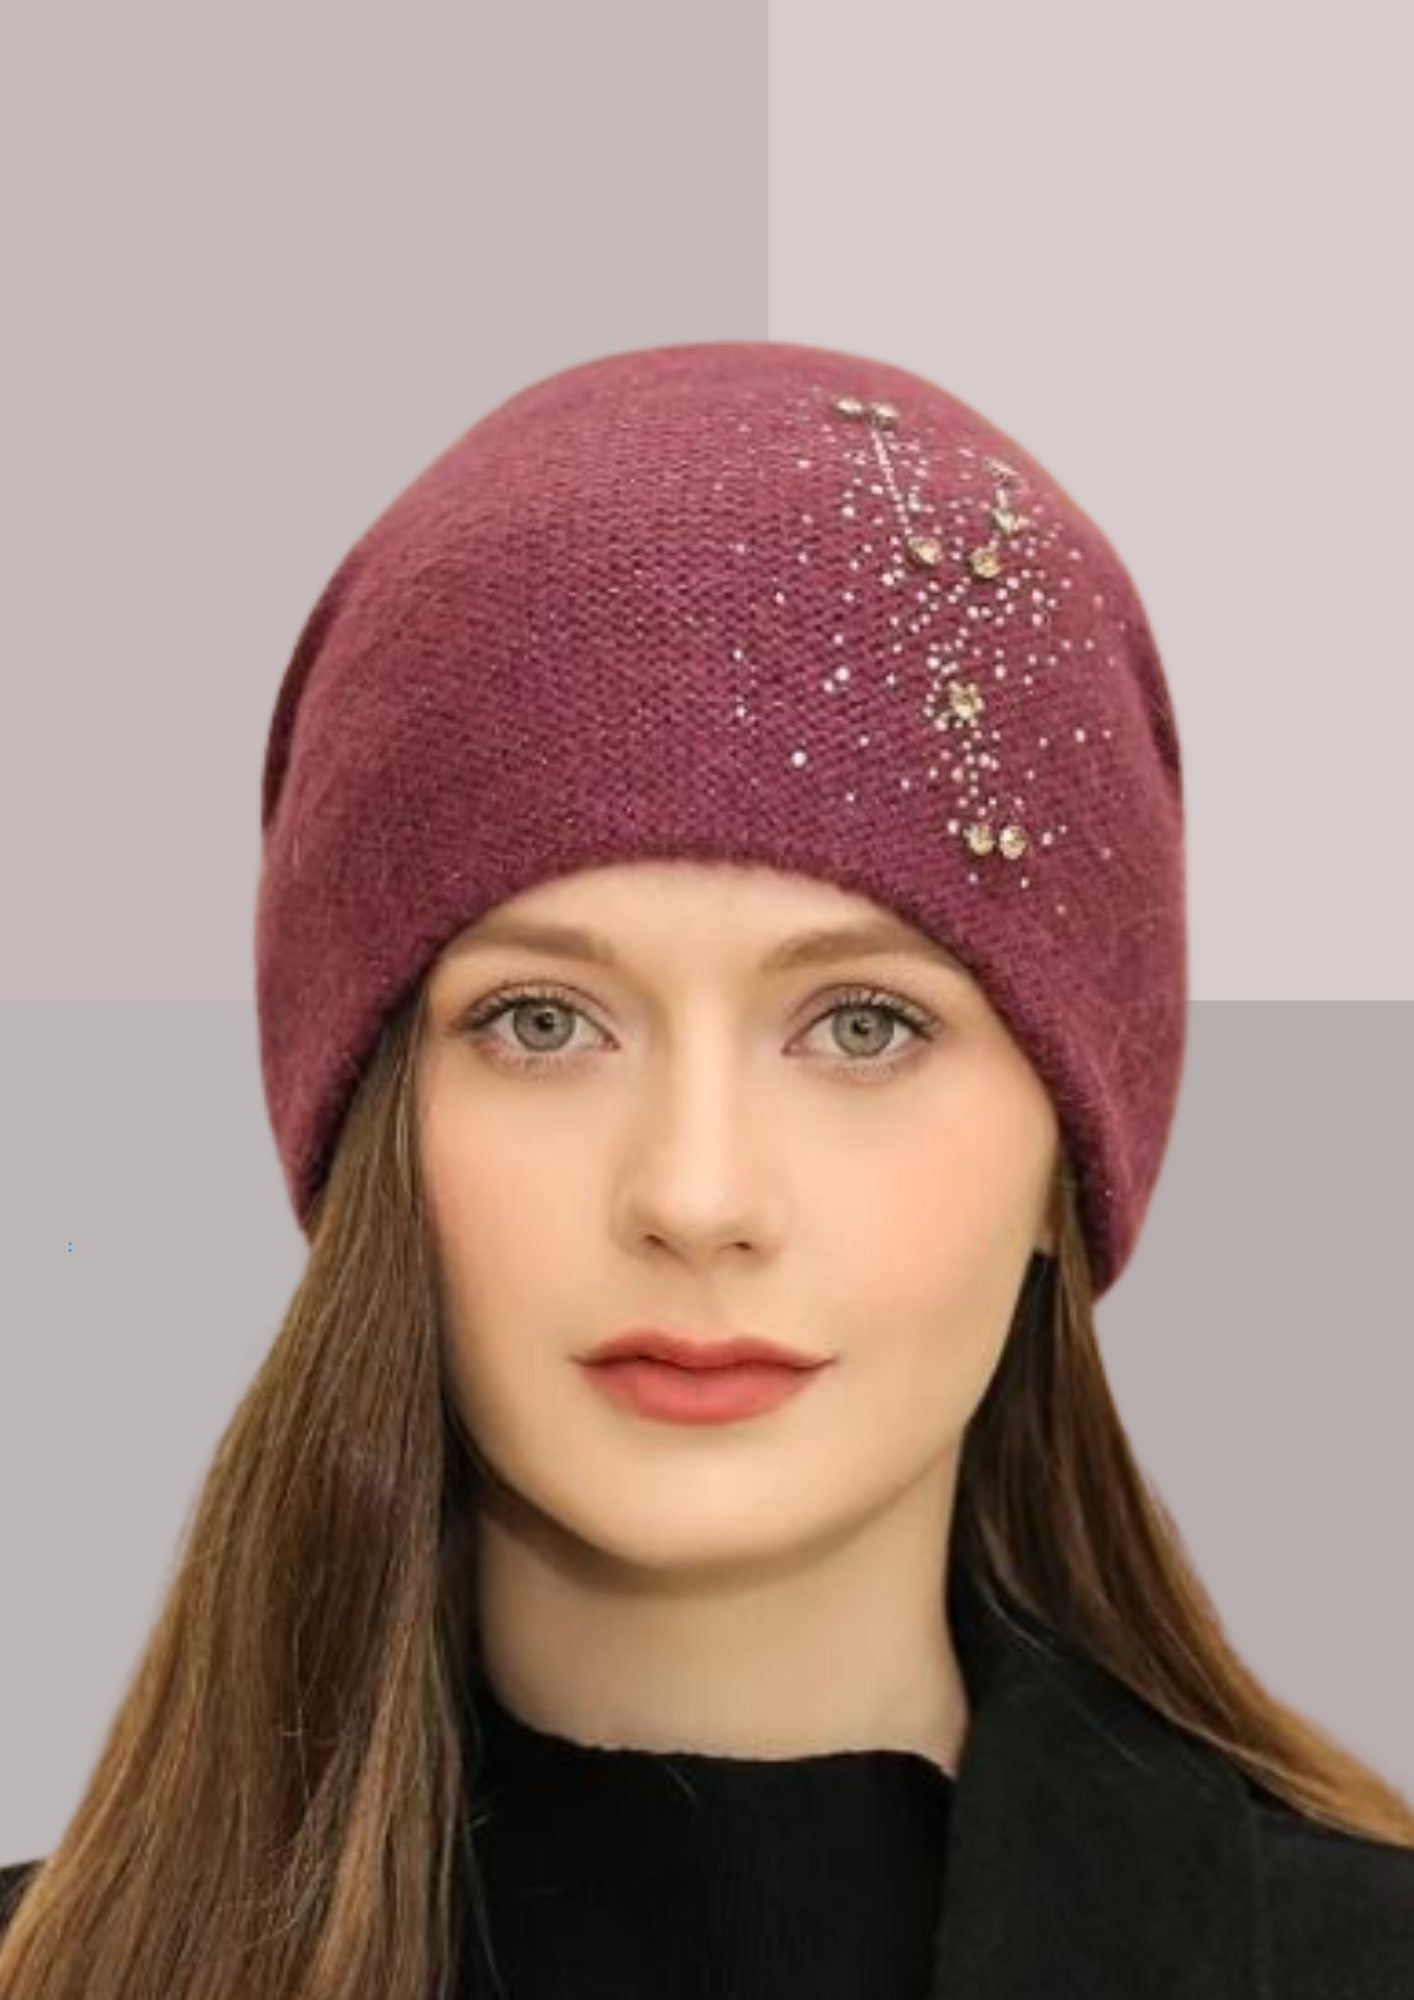 Bonnet casquette d'hiver - Vente bonnets originals pour femmes